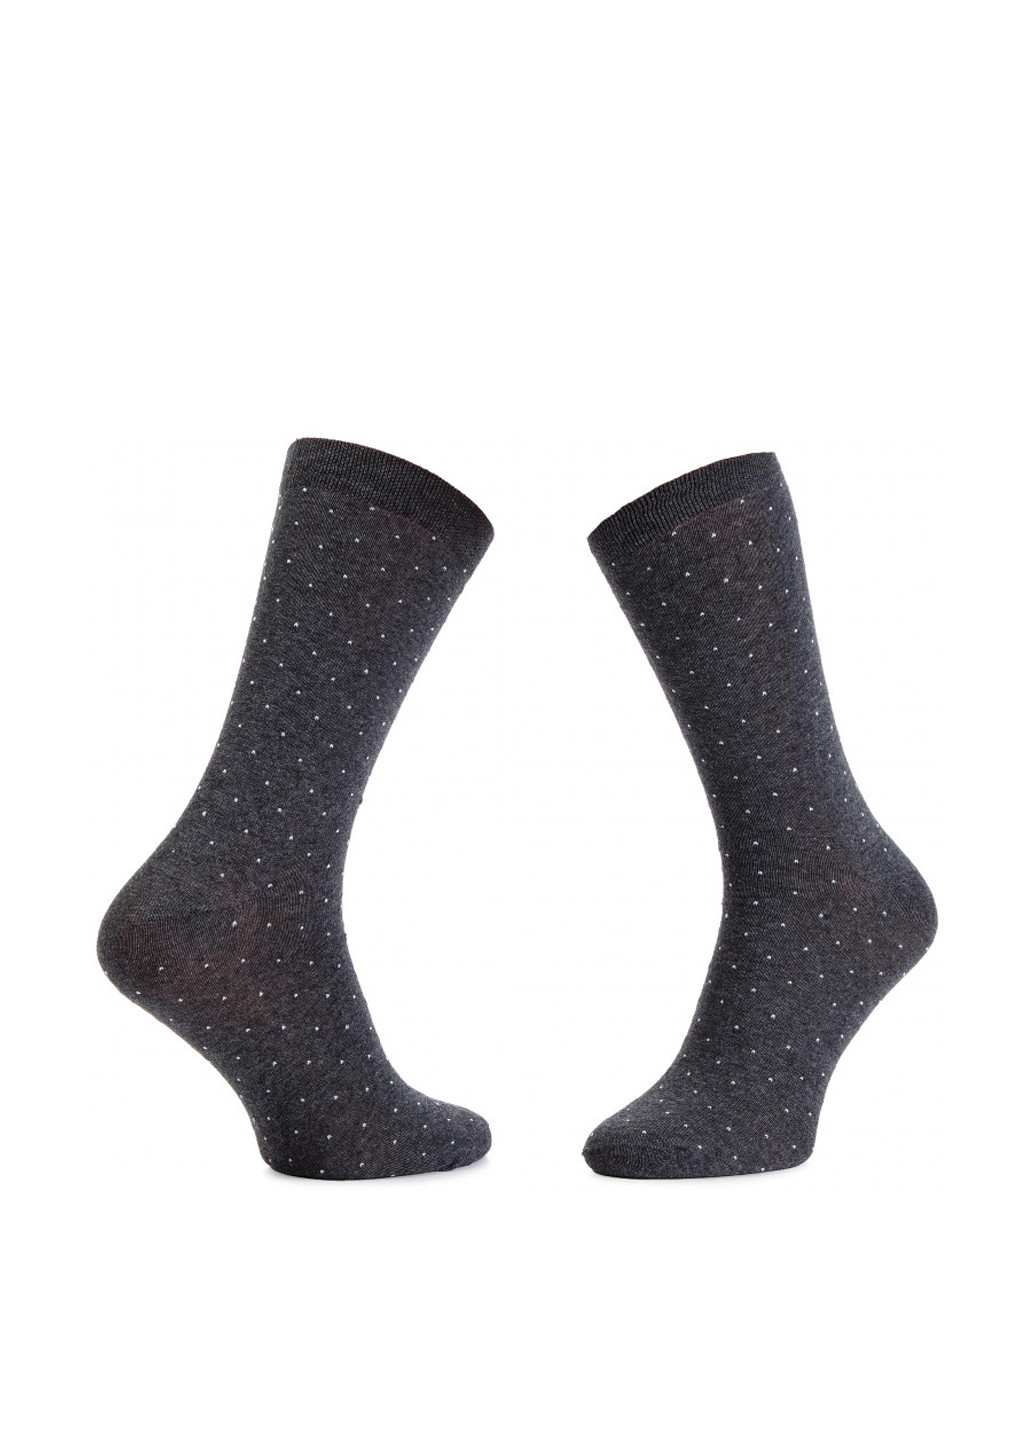 Шкарпетки чоловічі SKARPETY WIZYTOWE (KROPKI) 42-44 Lasocki SKARPETY WIZYTOWE (KROPKI горошки серые повседневные